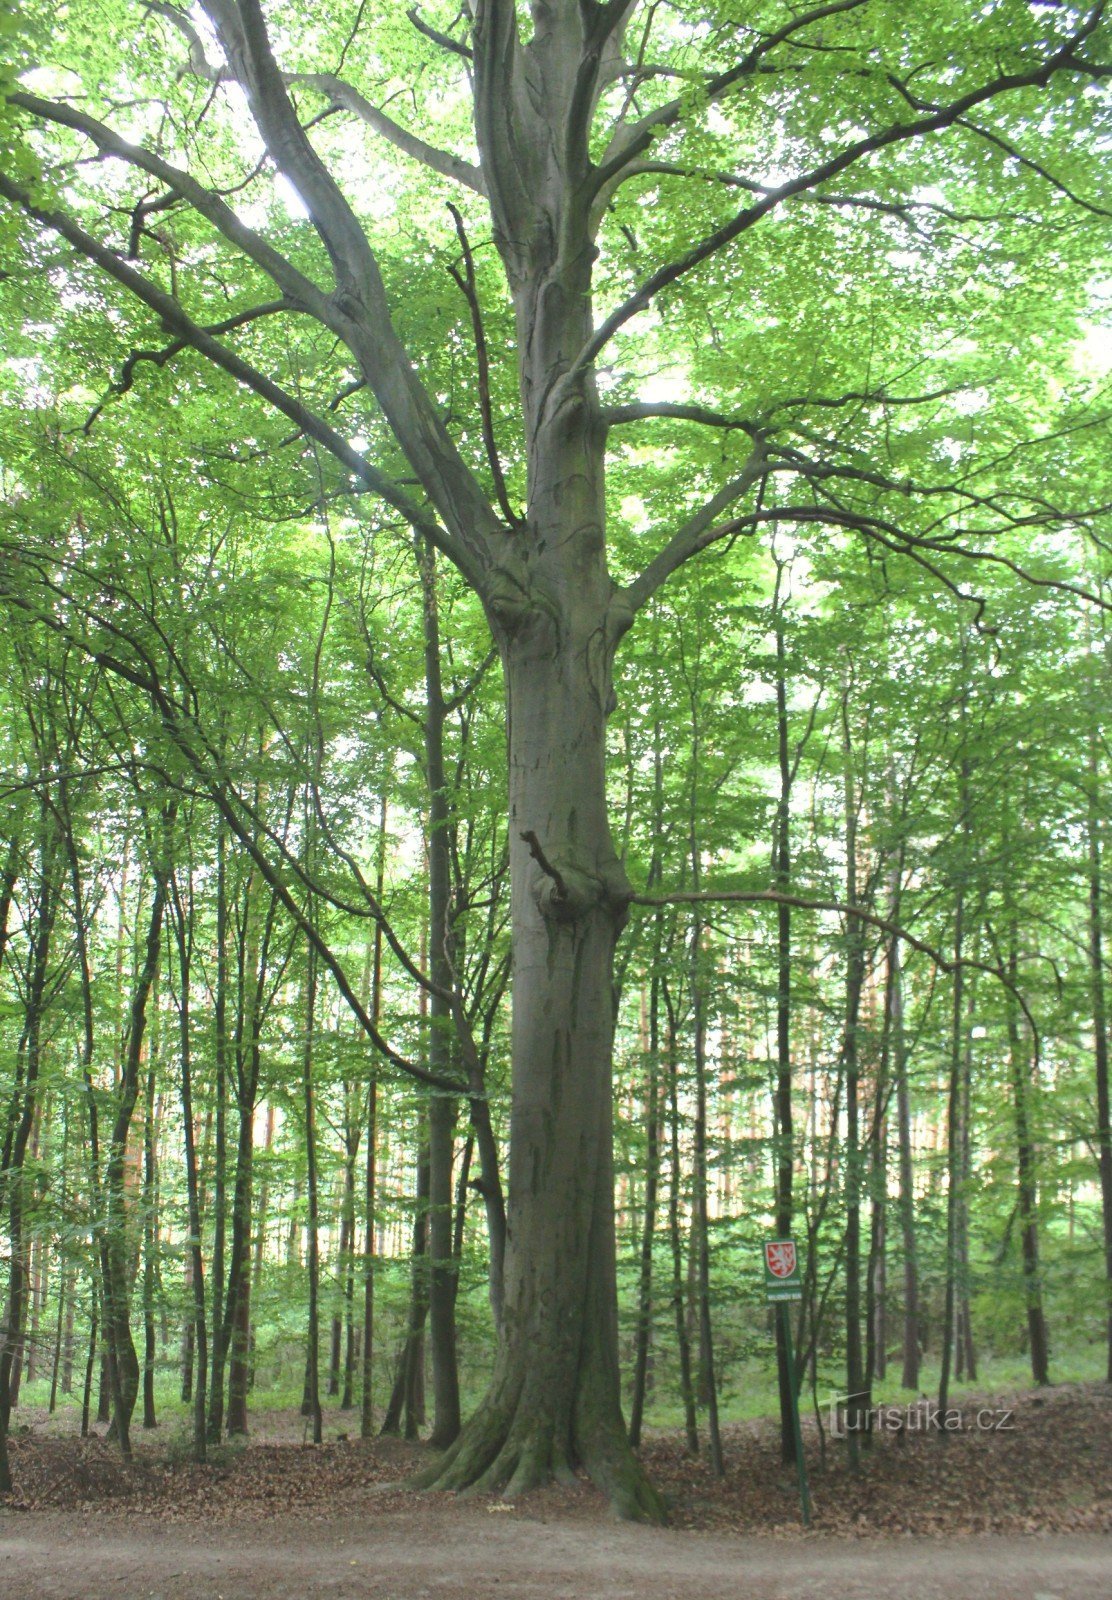 Az uralkodó fa általános képe